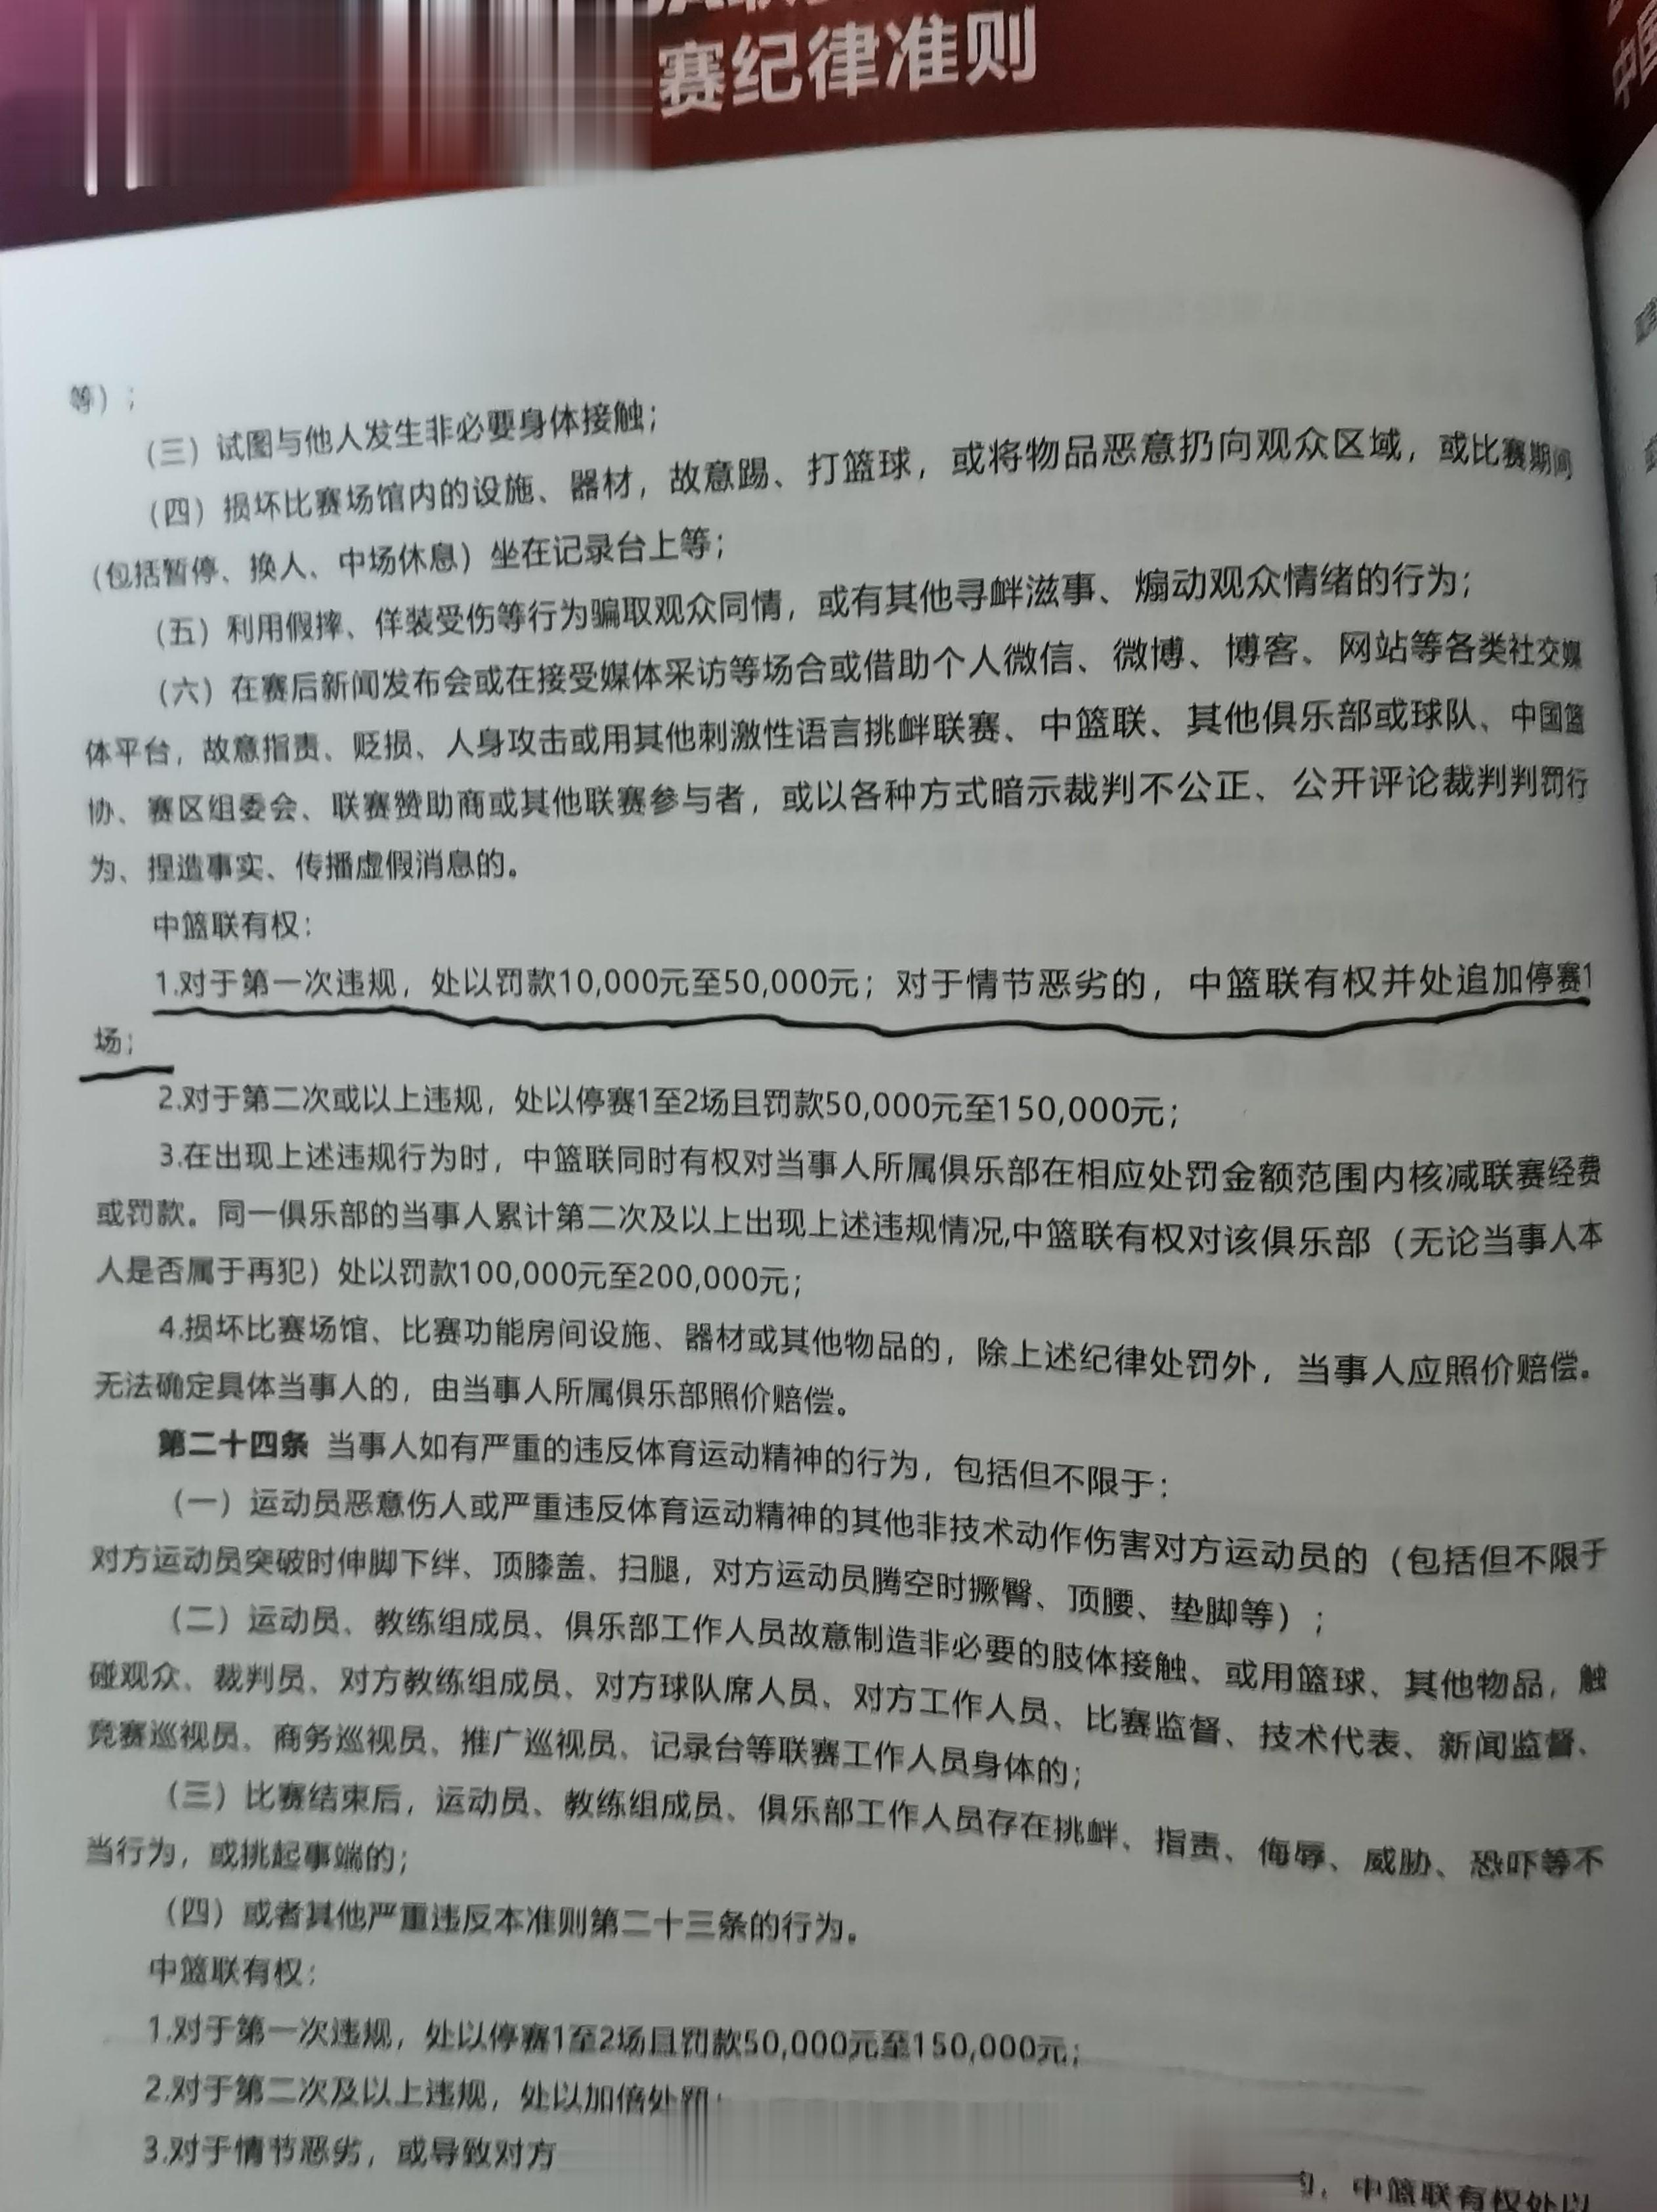 关于杜锋、杨鸣同样被驱逐但是处罚条款运用不同，处罚力度也有区别的事情，探长稍微回(2)